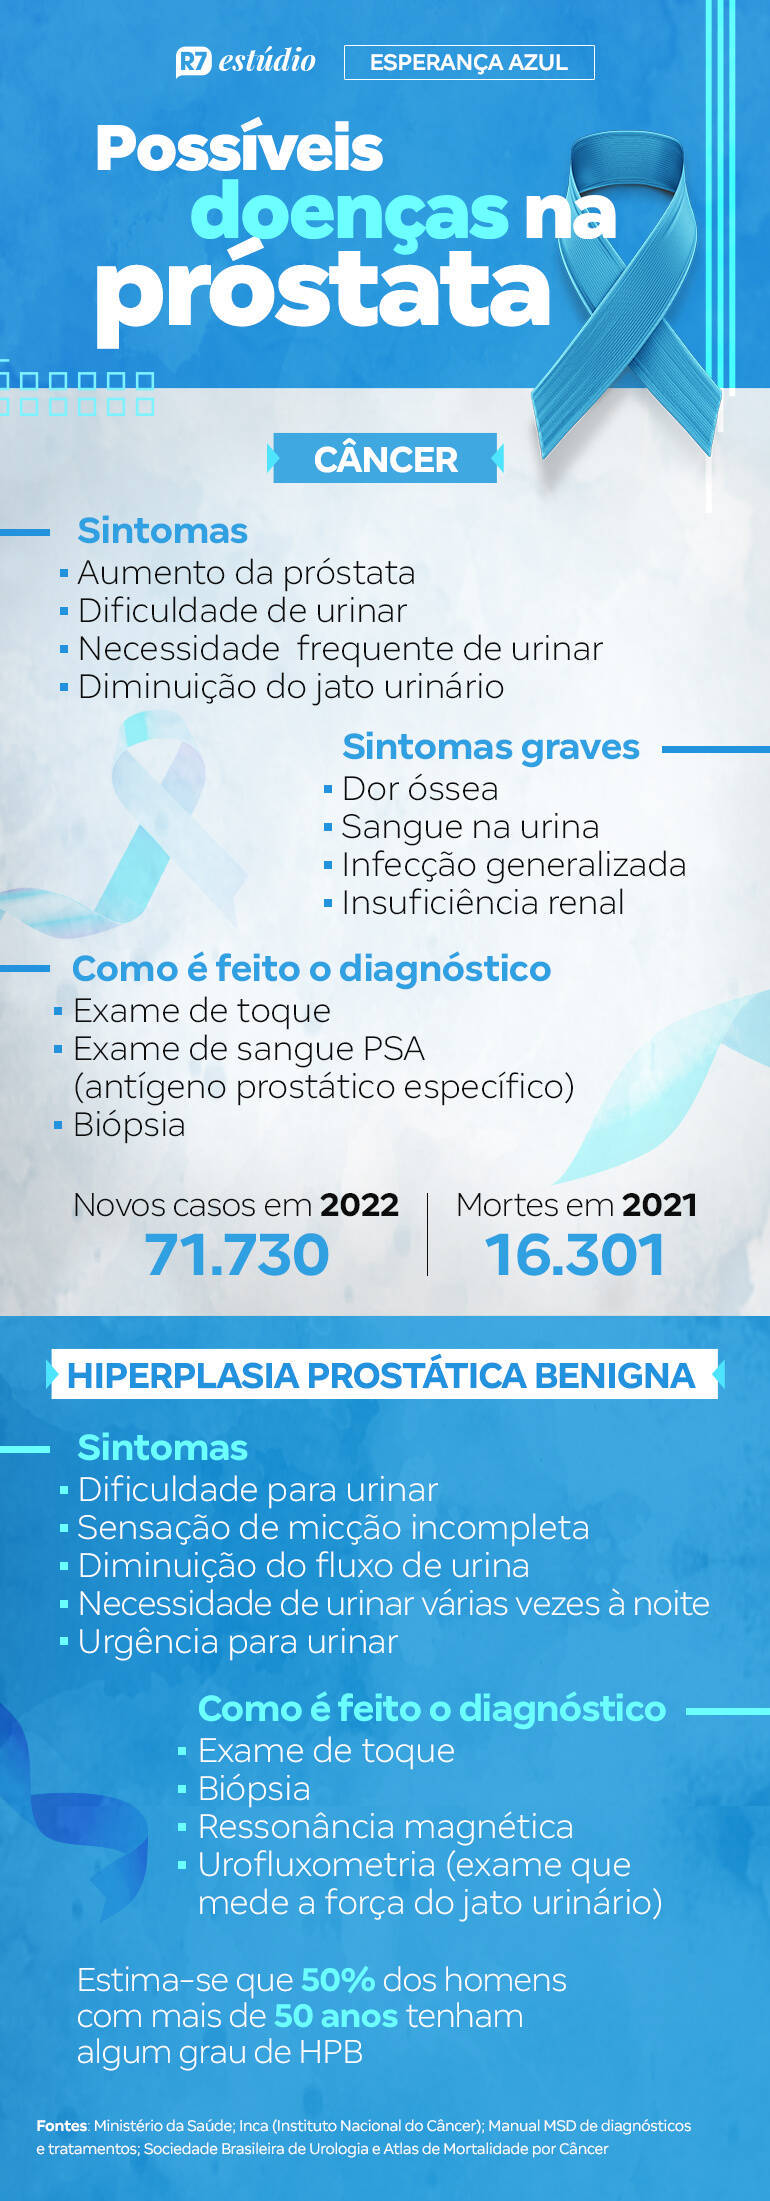 esperanca-azul:-tecnologias-permitem-acompanhar-a-saude-da-prostata-de-maneira-menos-invasiva-e-com-recuperacao-mais-rapida